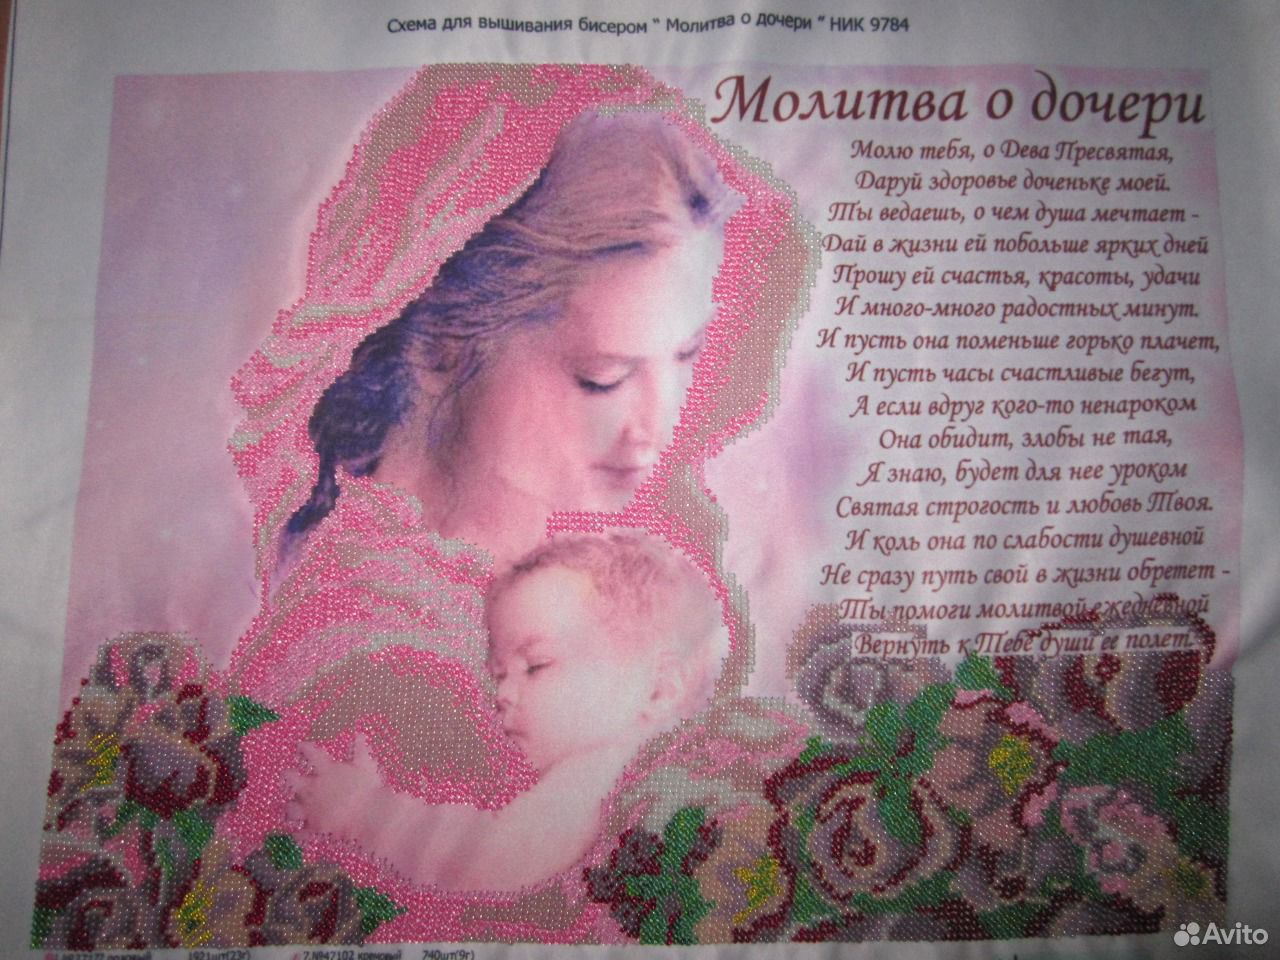 Молитва о дочери материнская очень сильная защита. Молитва о дочери. Молитва за дочь. Молитва матери о дочери. Vjkbndf PF LJX.